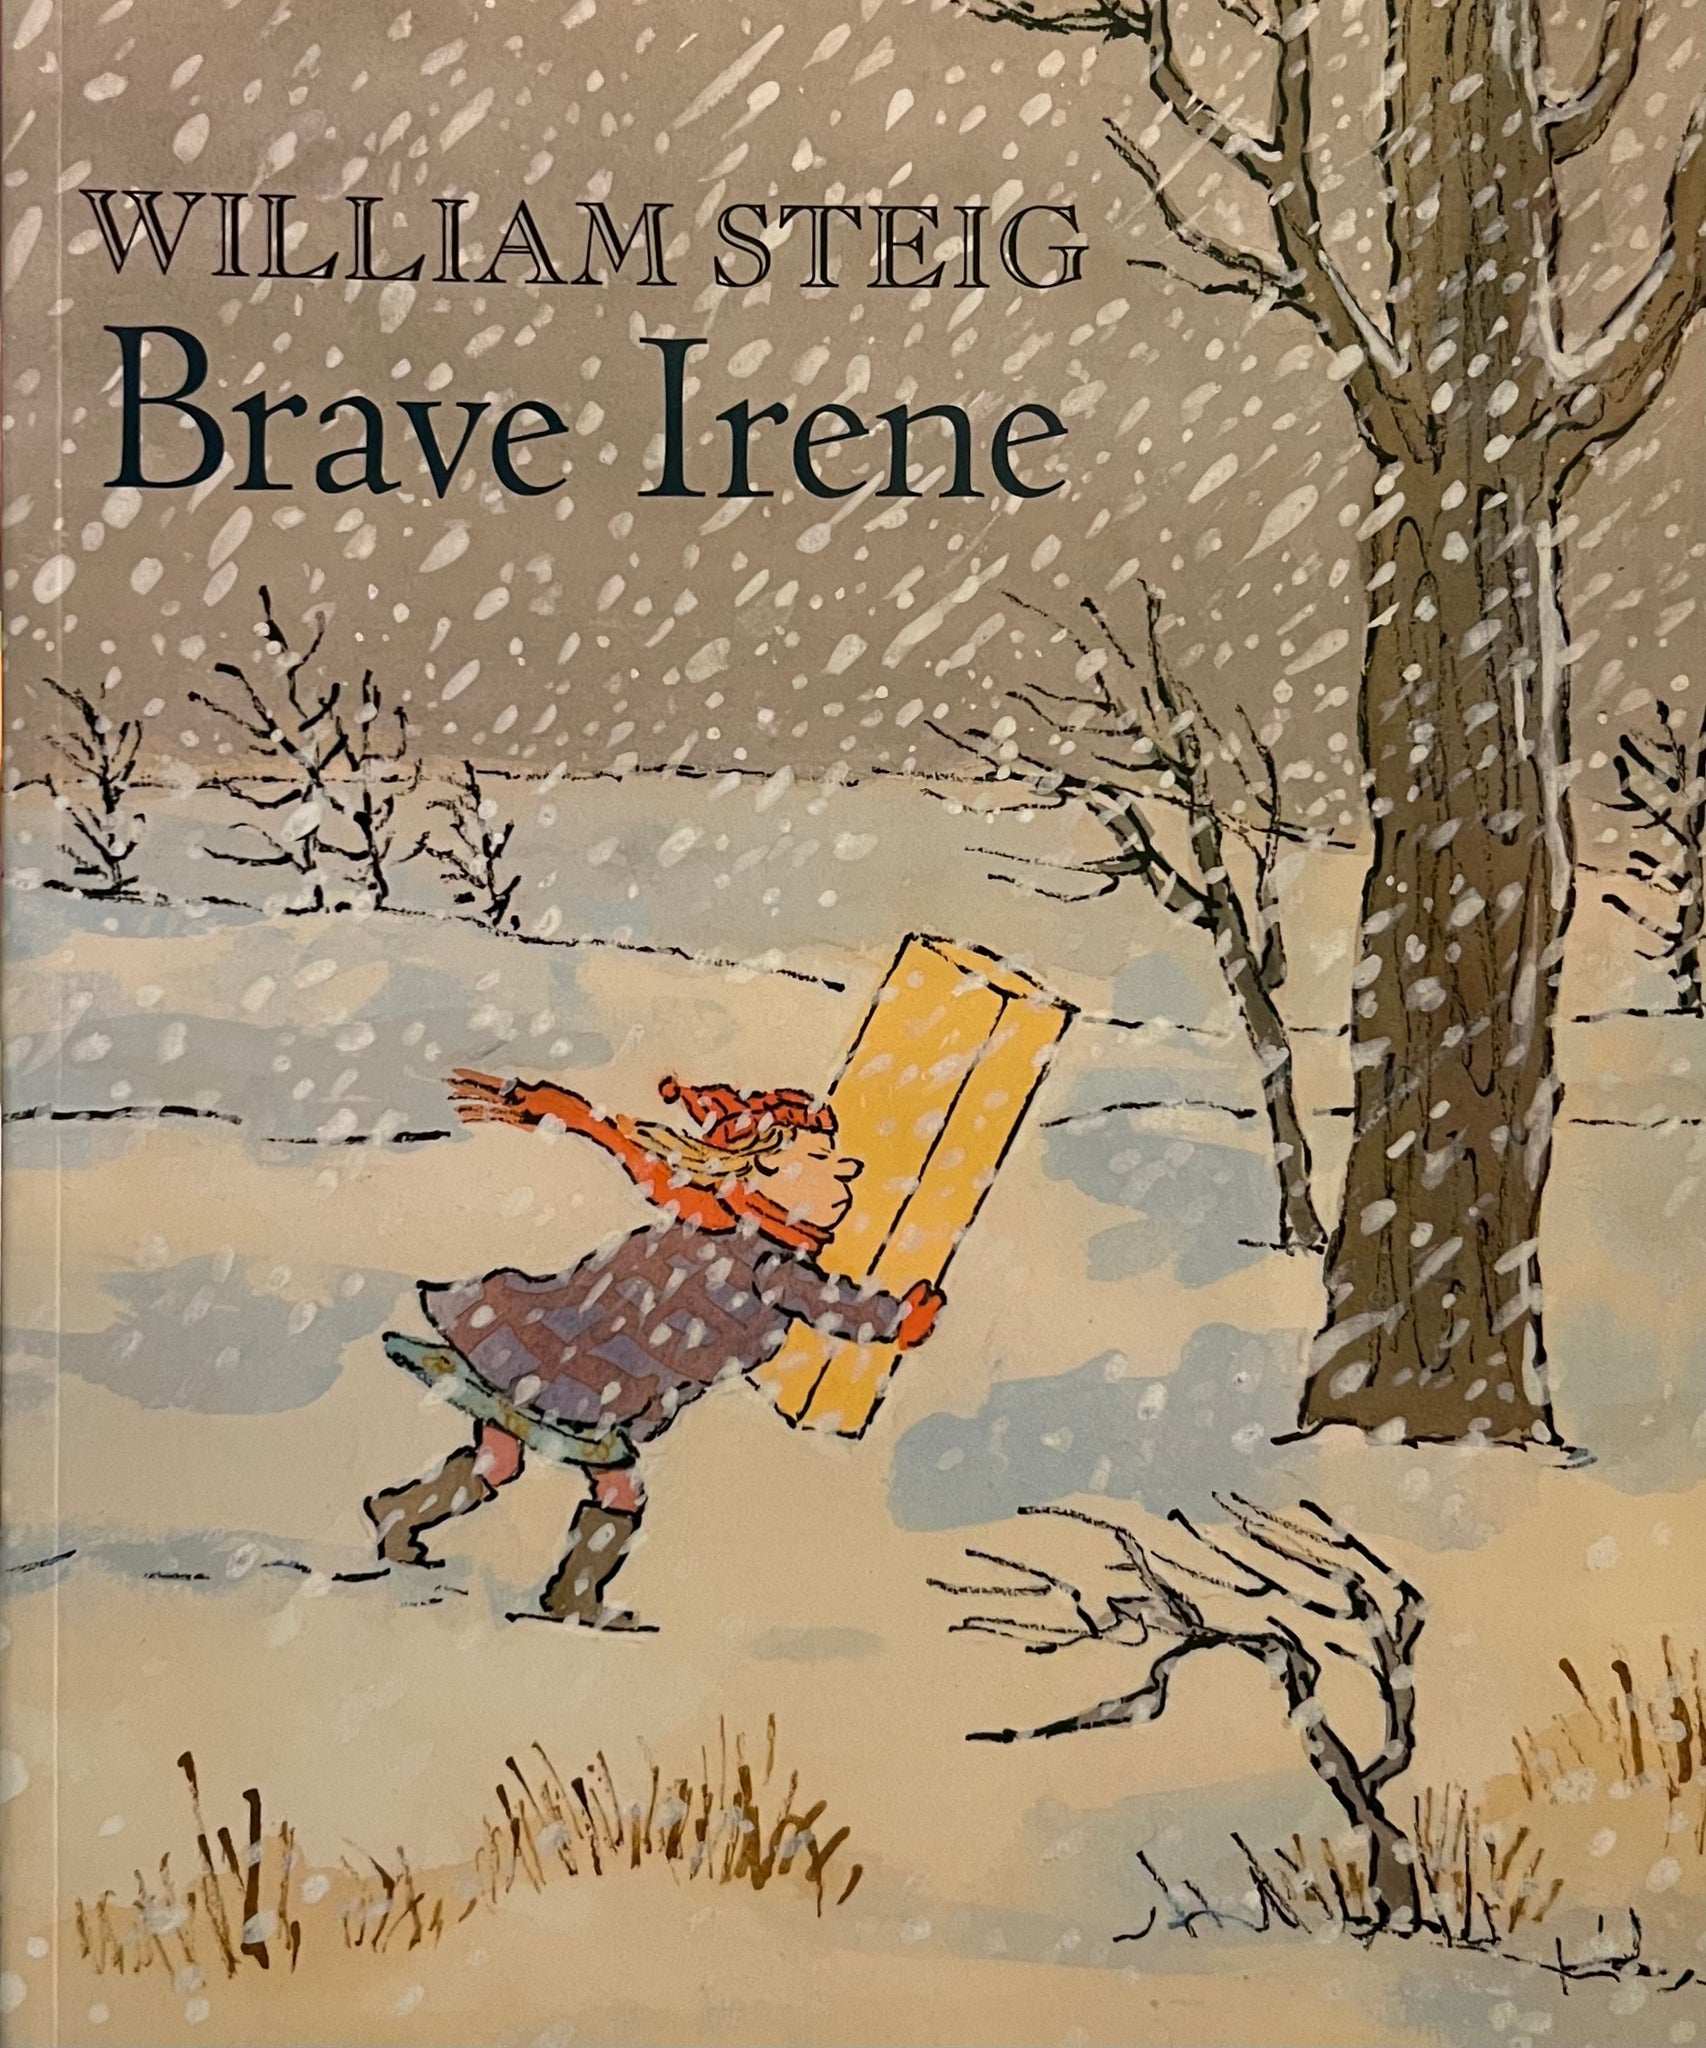 Brave Irene, William Steig